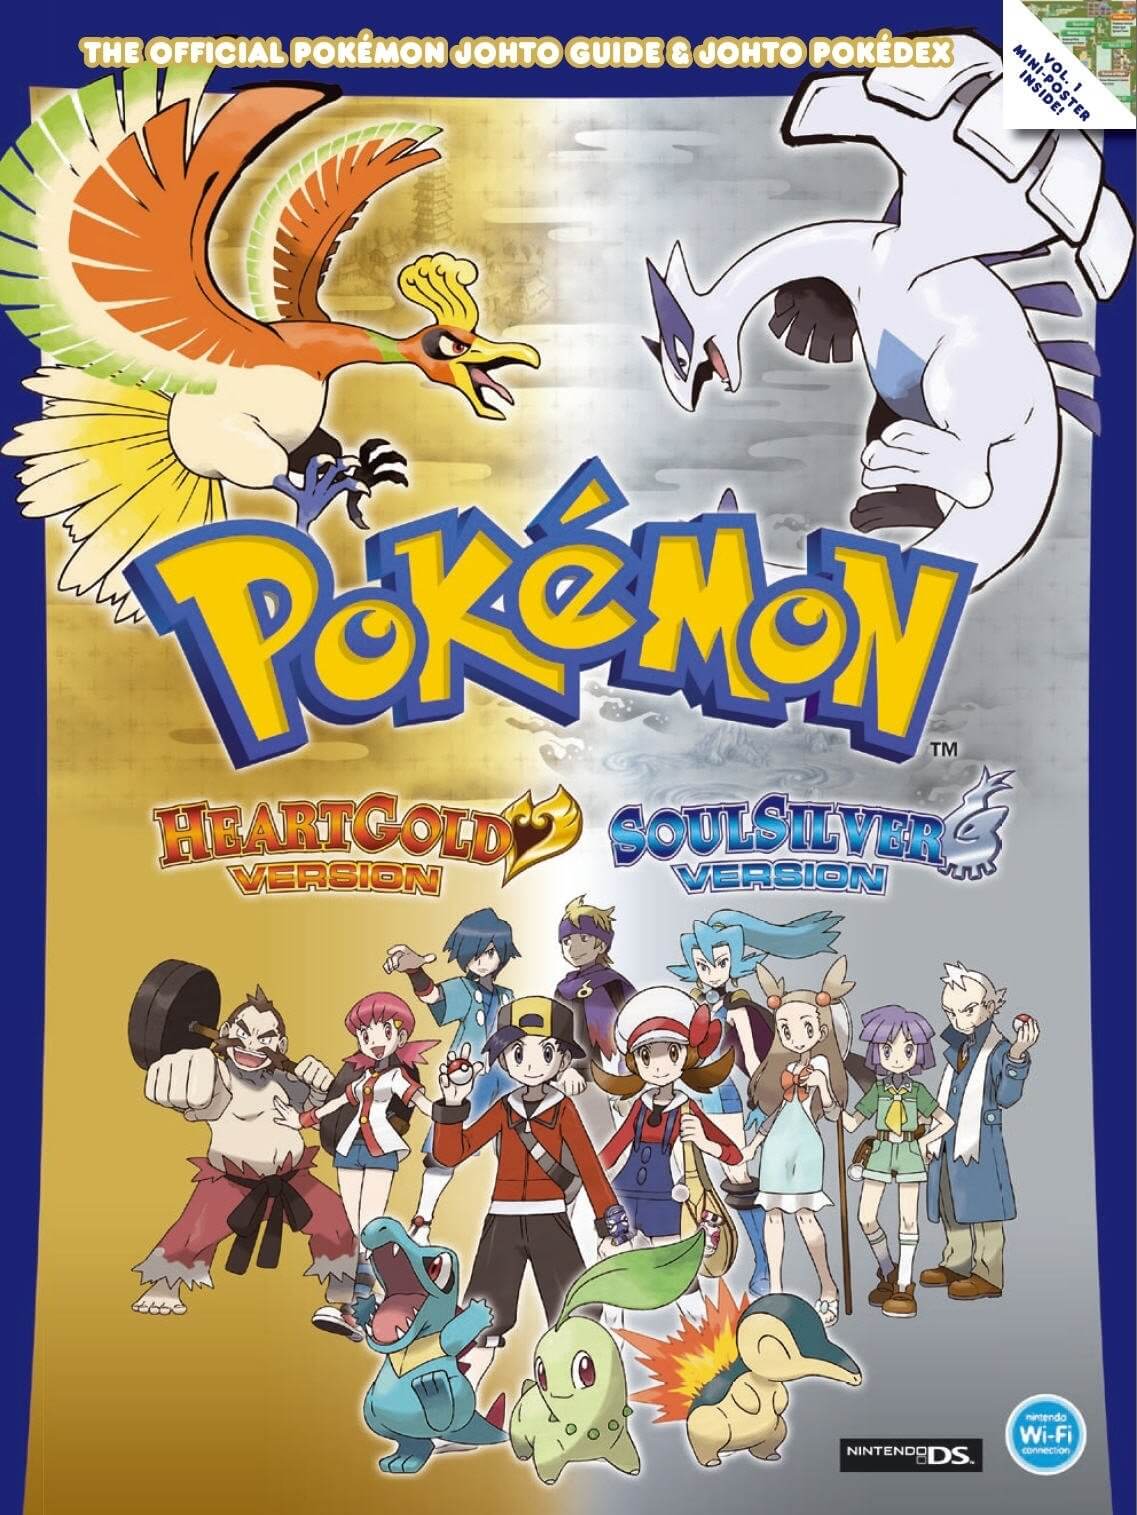 Pokémon HeartGold & SoulSilver 2010 - NDS ROM | Nintendo